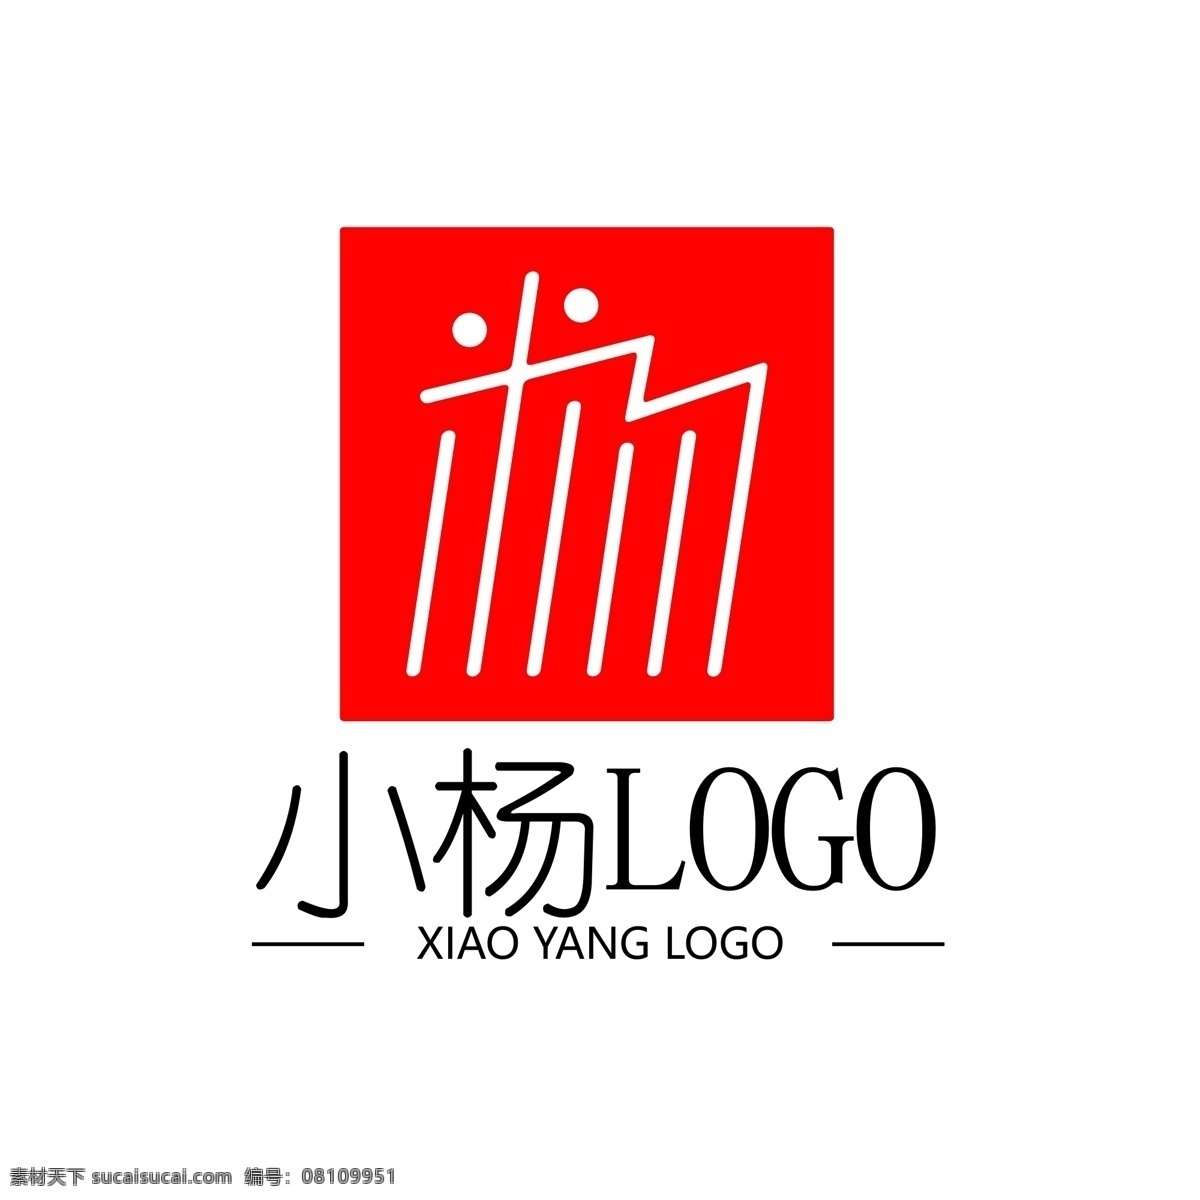 小杨 logo 商标设计 模板 小杨logo 杨logo 米汤logo 米logo 印章logo